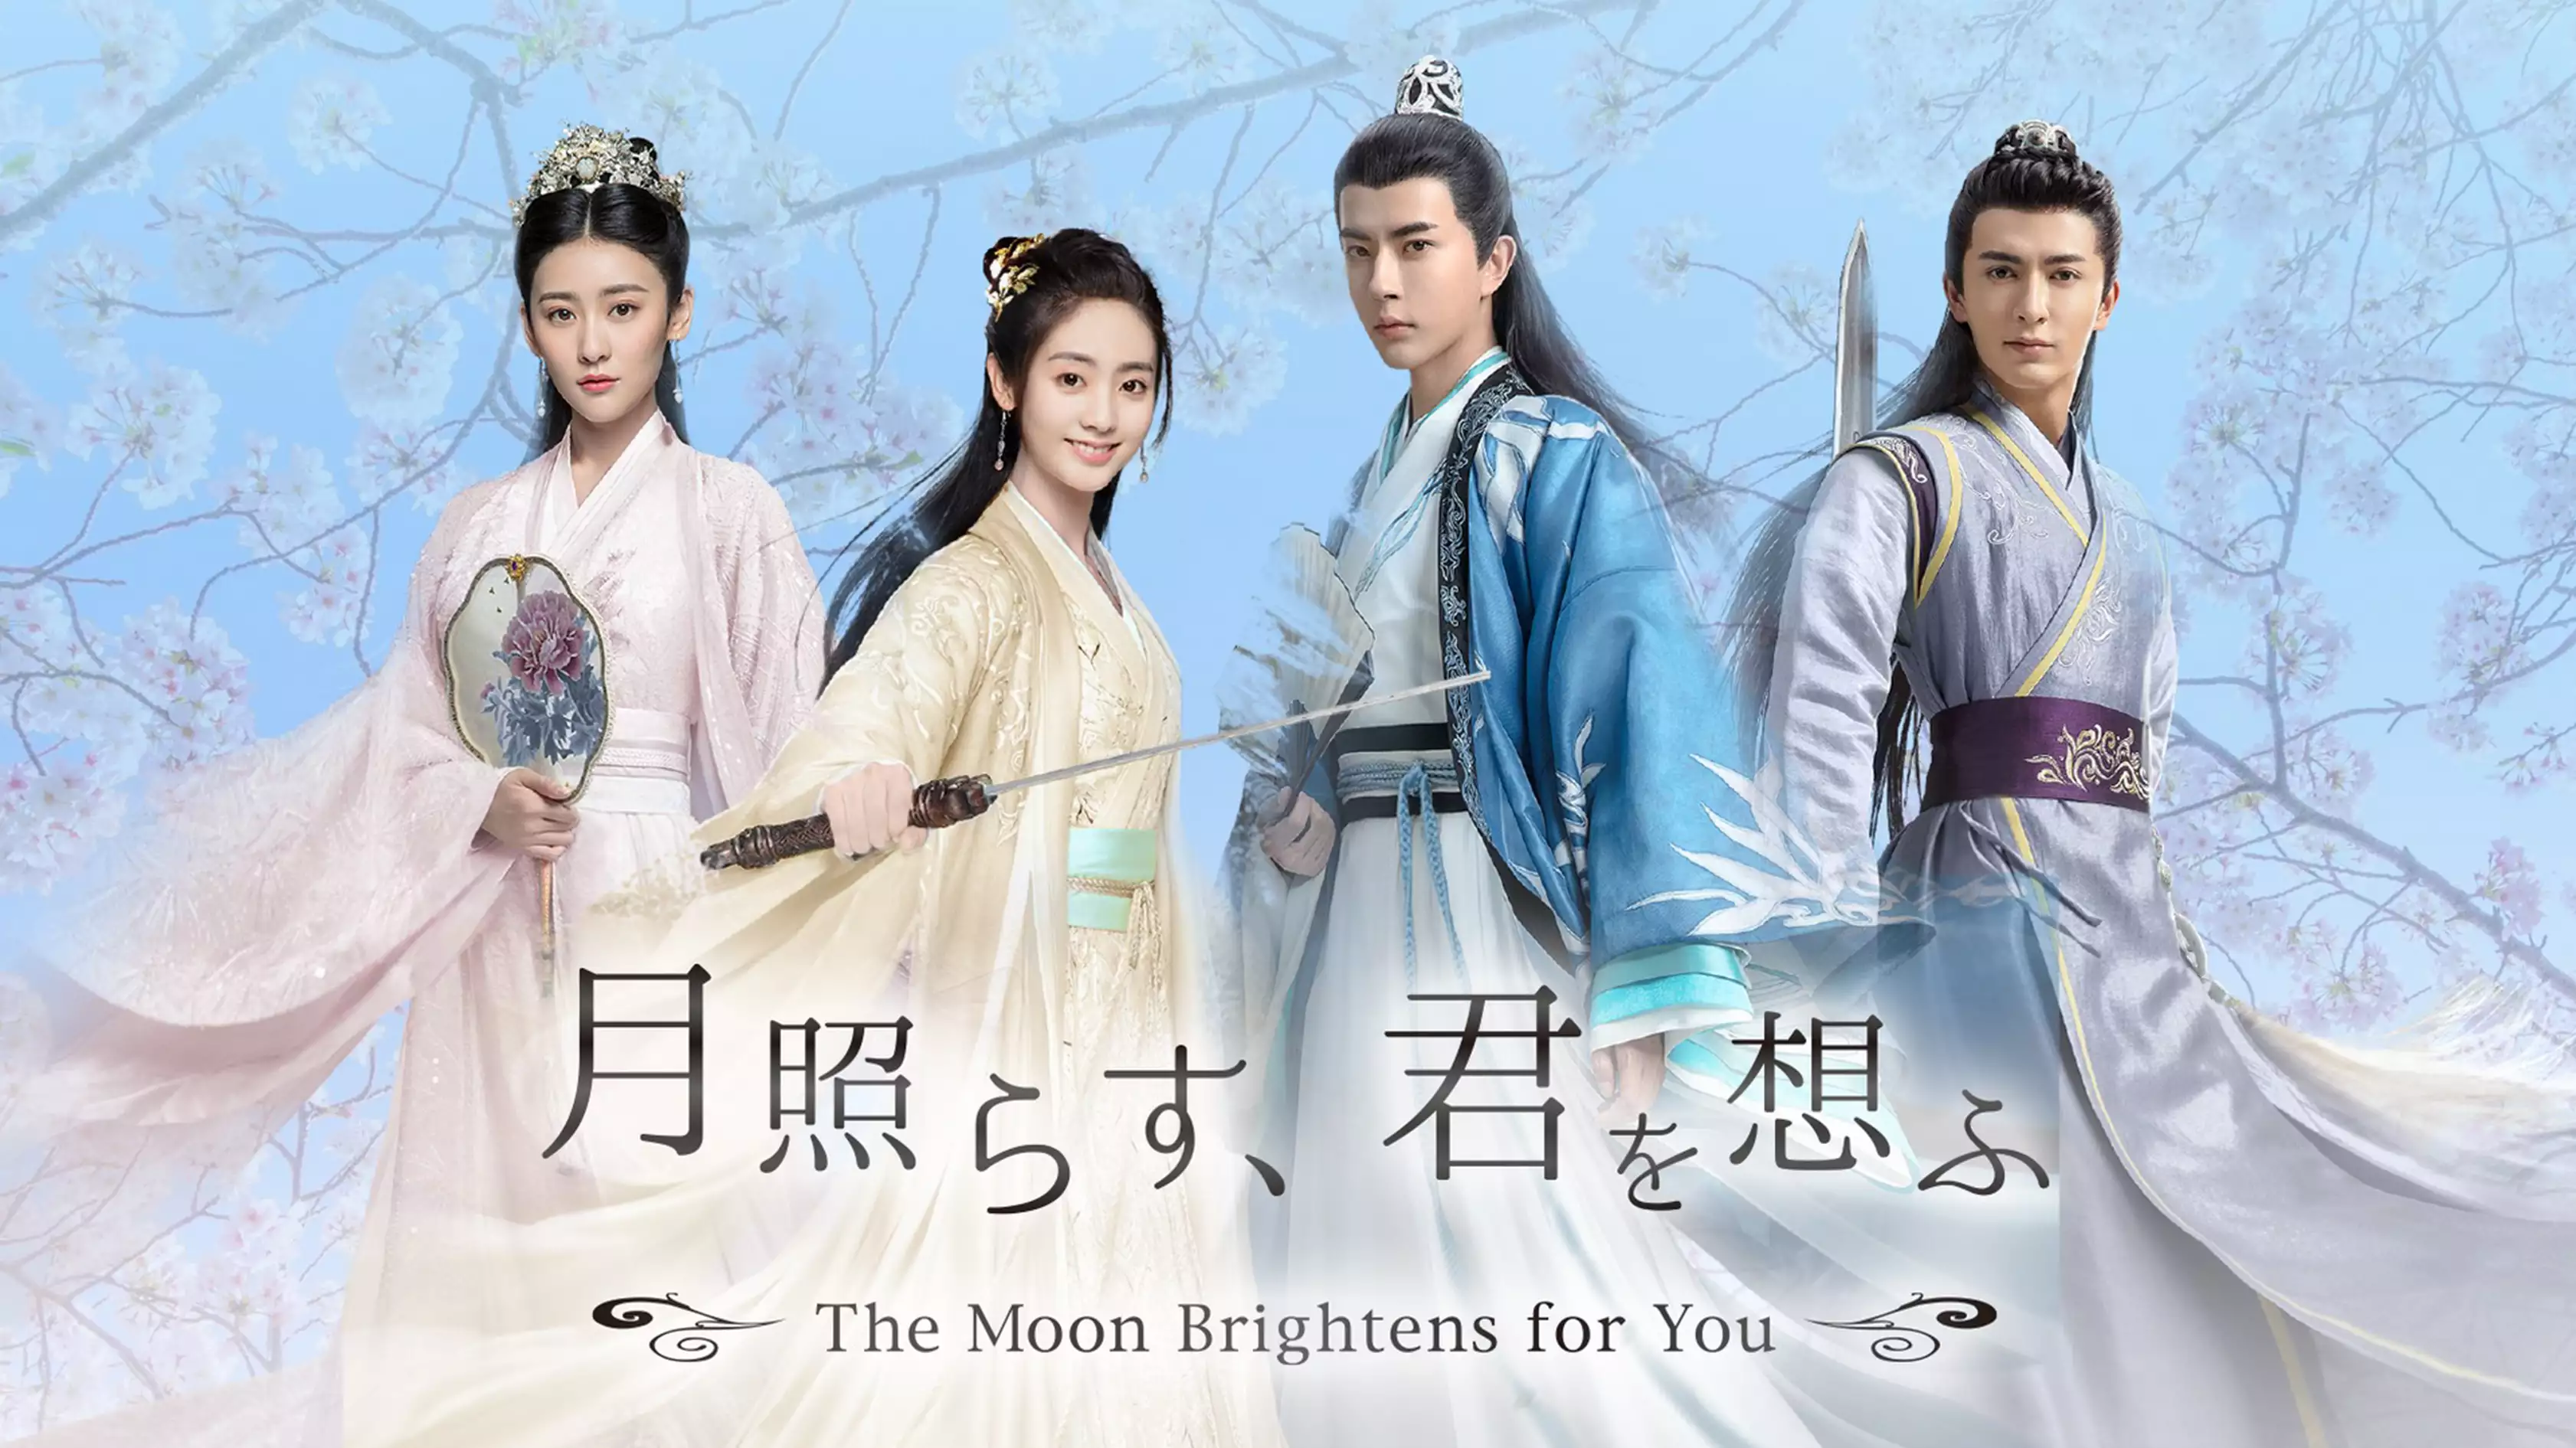 中国ドラマ『月照らす、君を想ふ ～The Moon Brightens for You～』の日本語字幕版の動画を全話見れる配信アプリまとめ